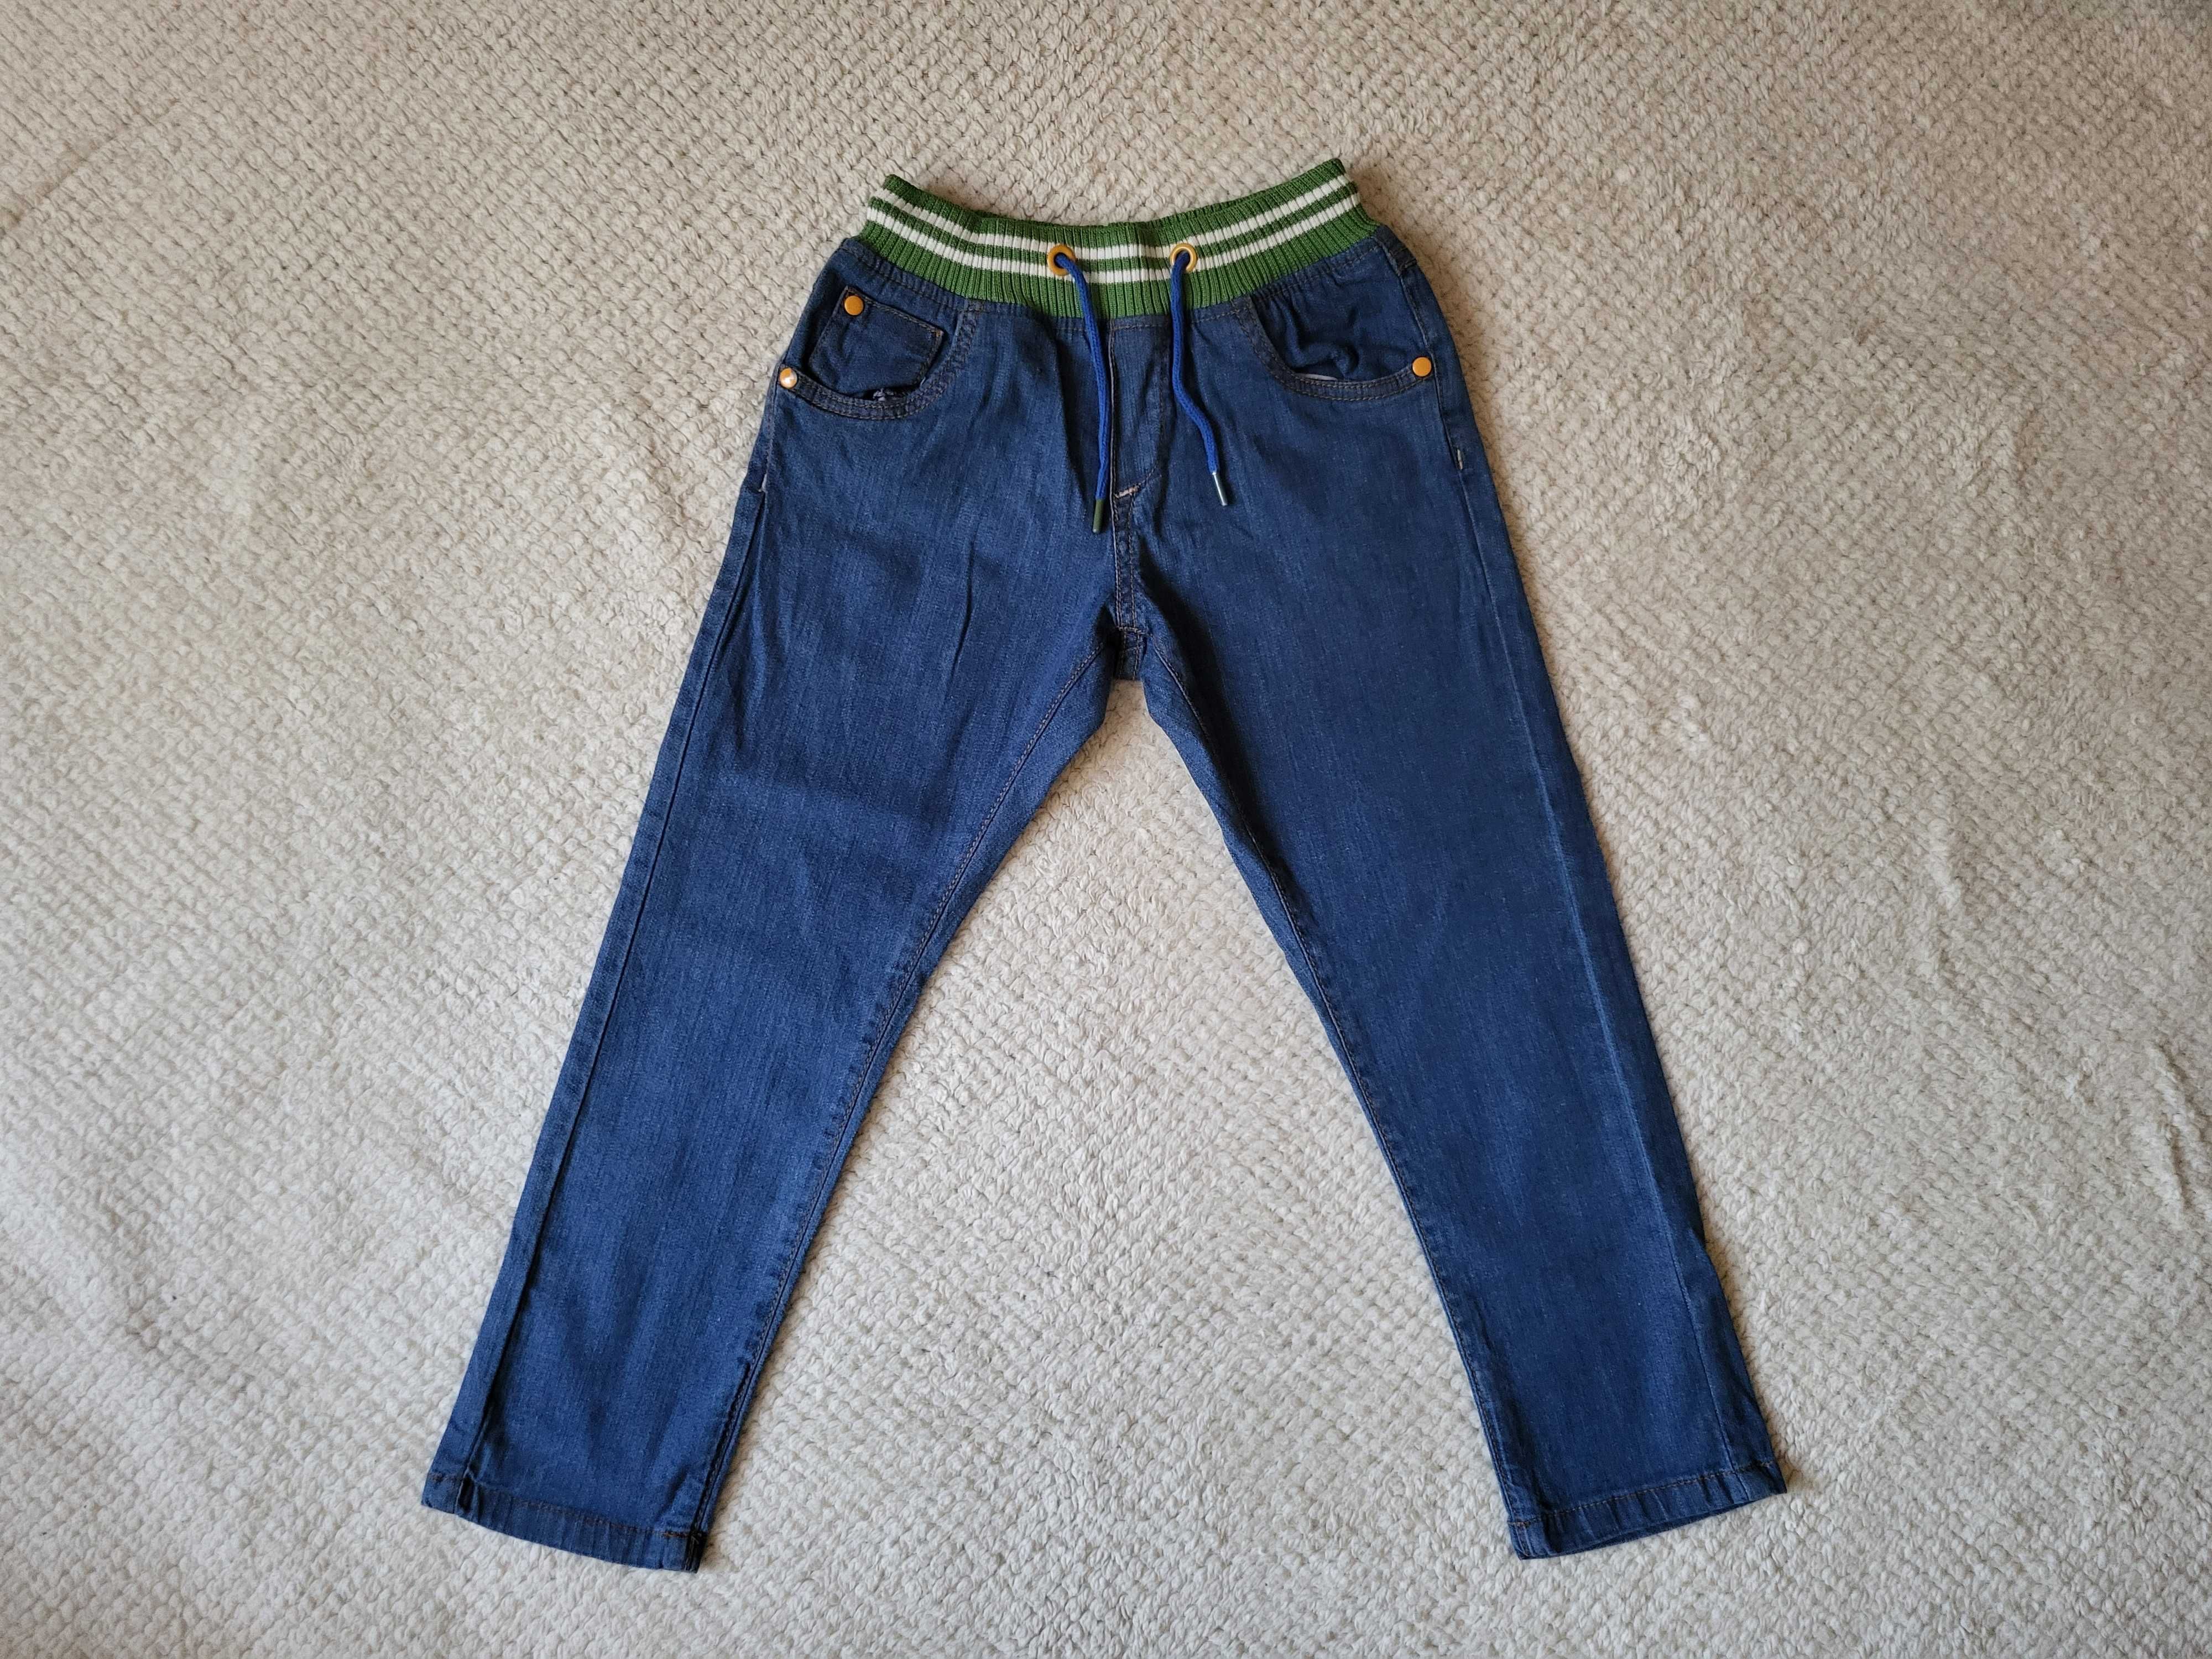 Spodnie chłopięce jeansowe 5.10.15, r. 116